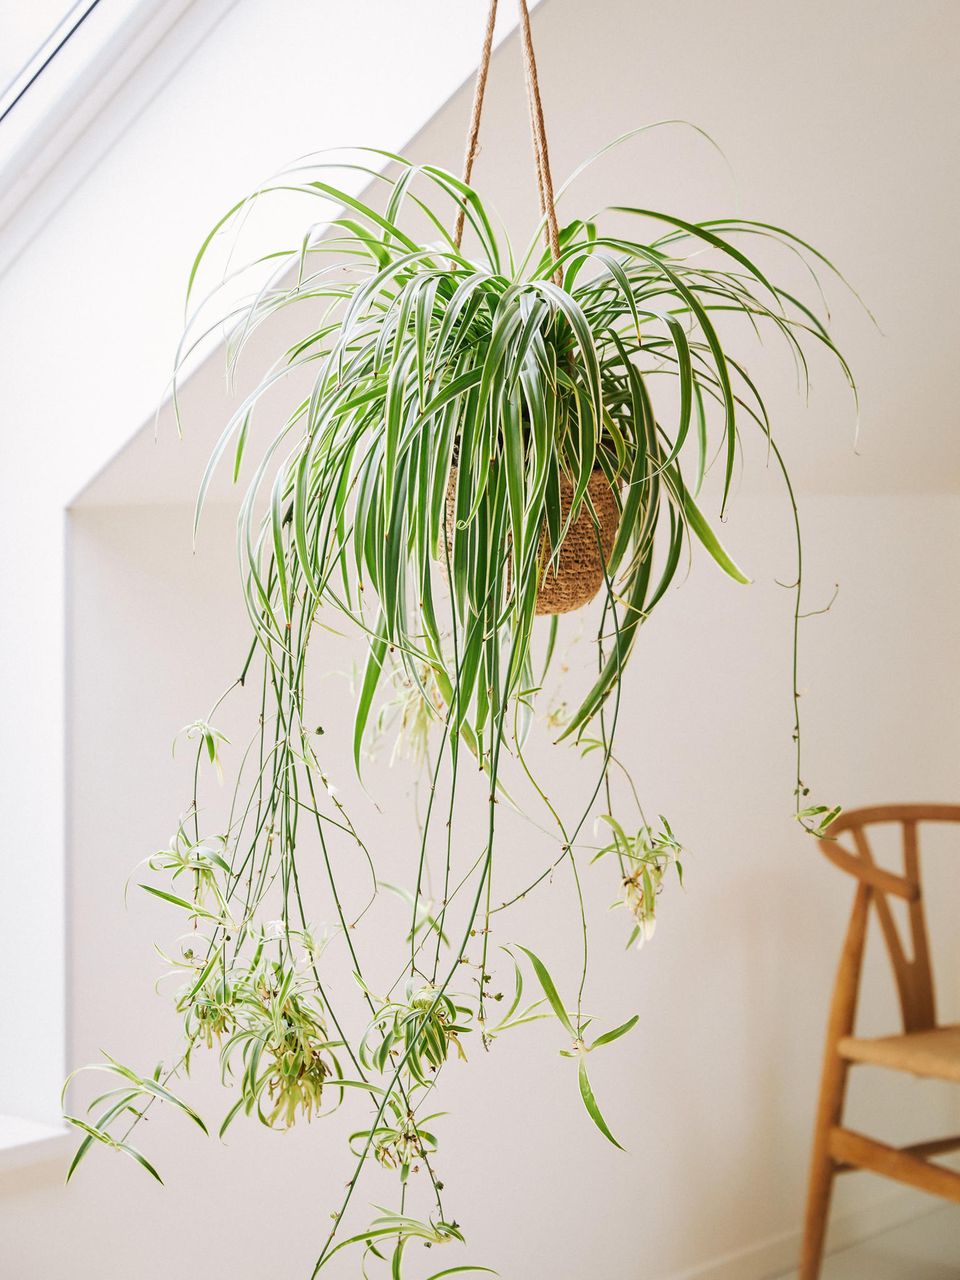 Grünlilie als Hängepflanze in einer Blumenampel in einem weißen hellen Raum